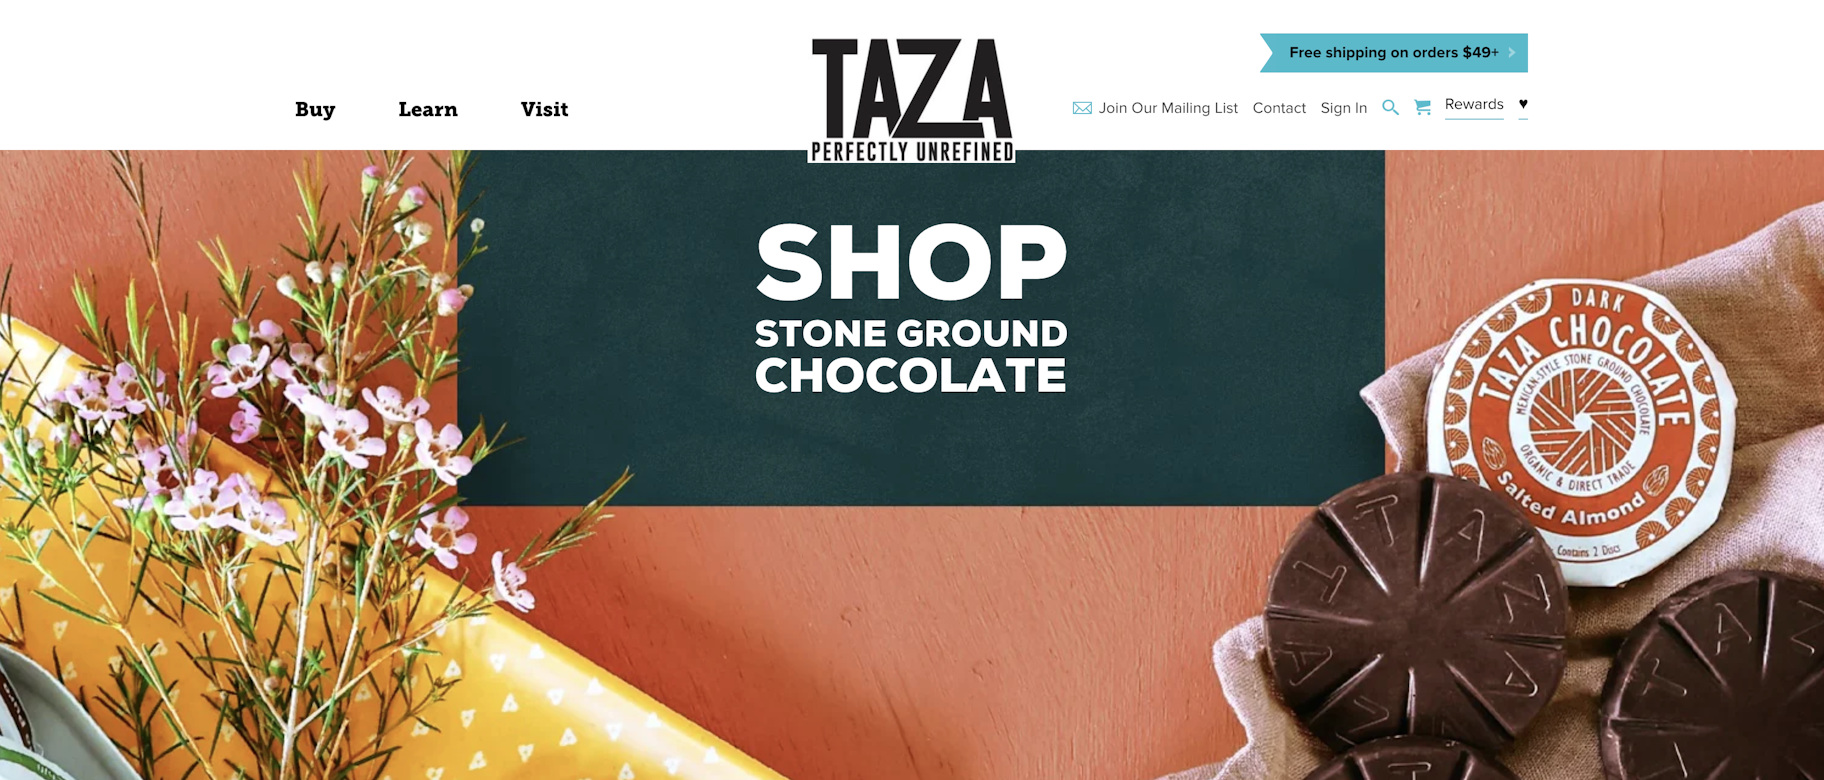 Taza chocolate